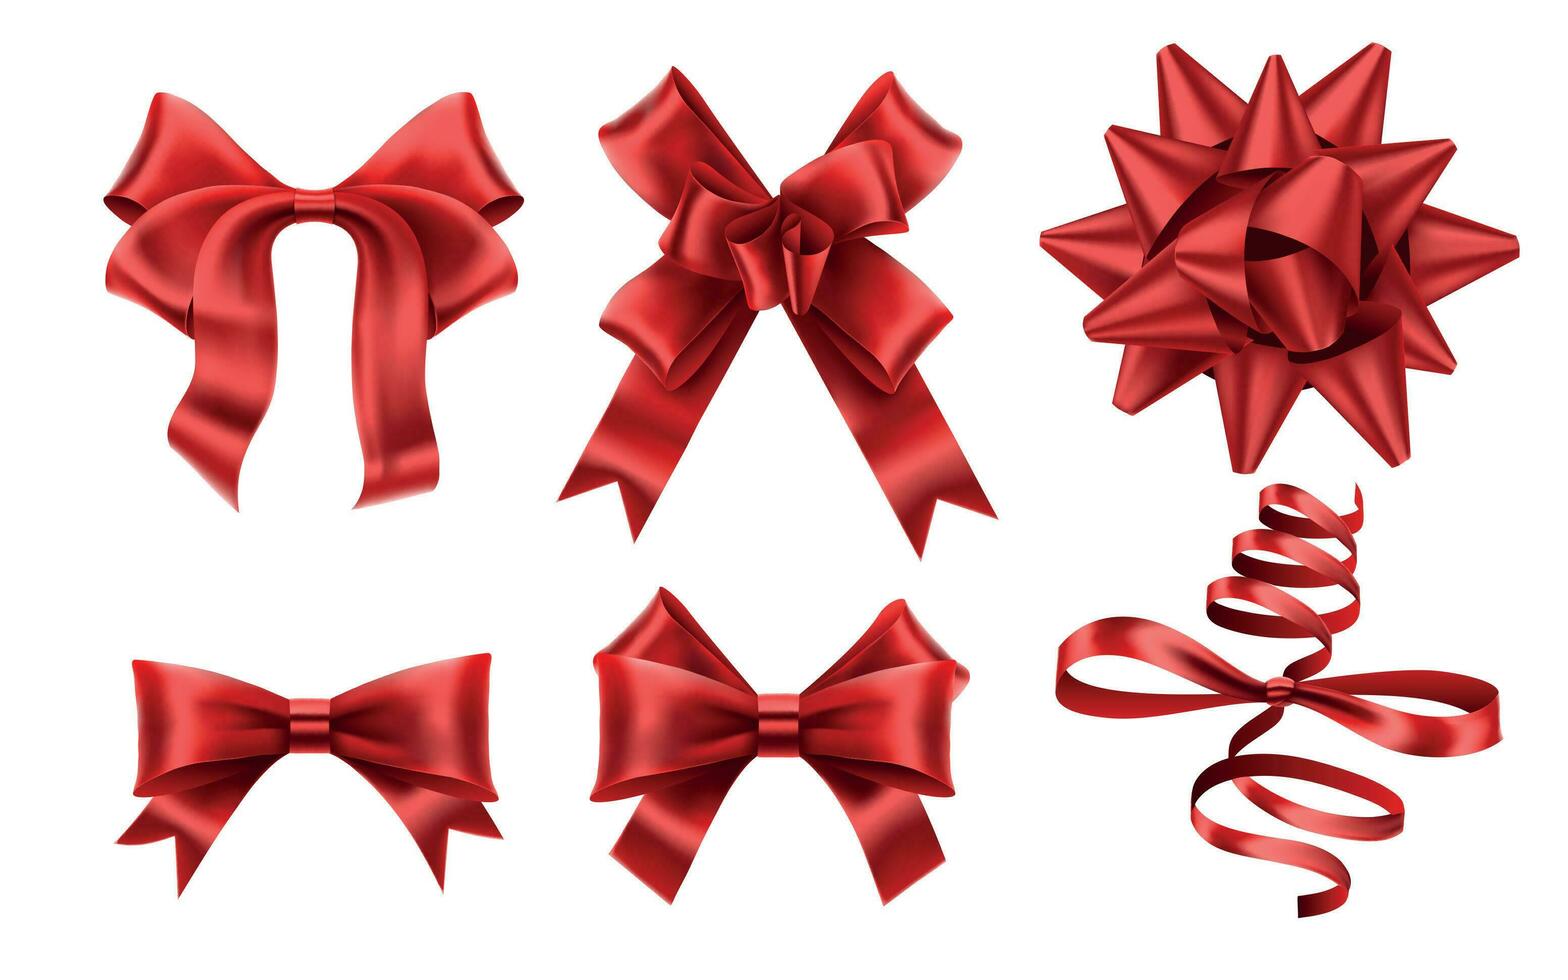 realistico rosso archi. decorativo natale regalo nastro arco, Natale o romanza decorazione elementi vettore illustrazione impostato